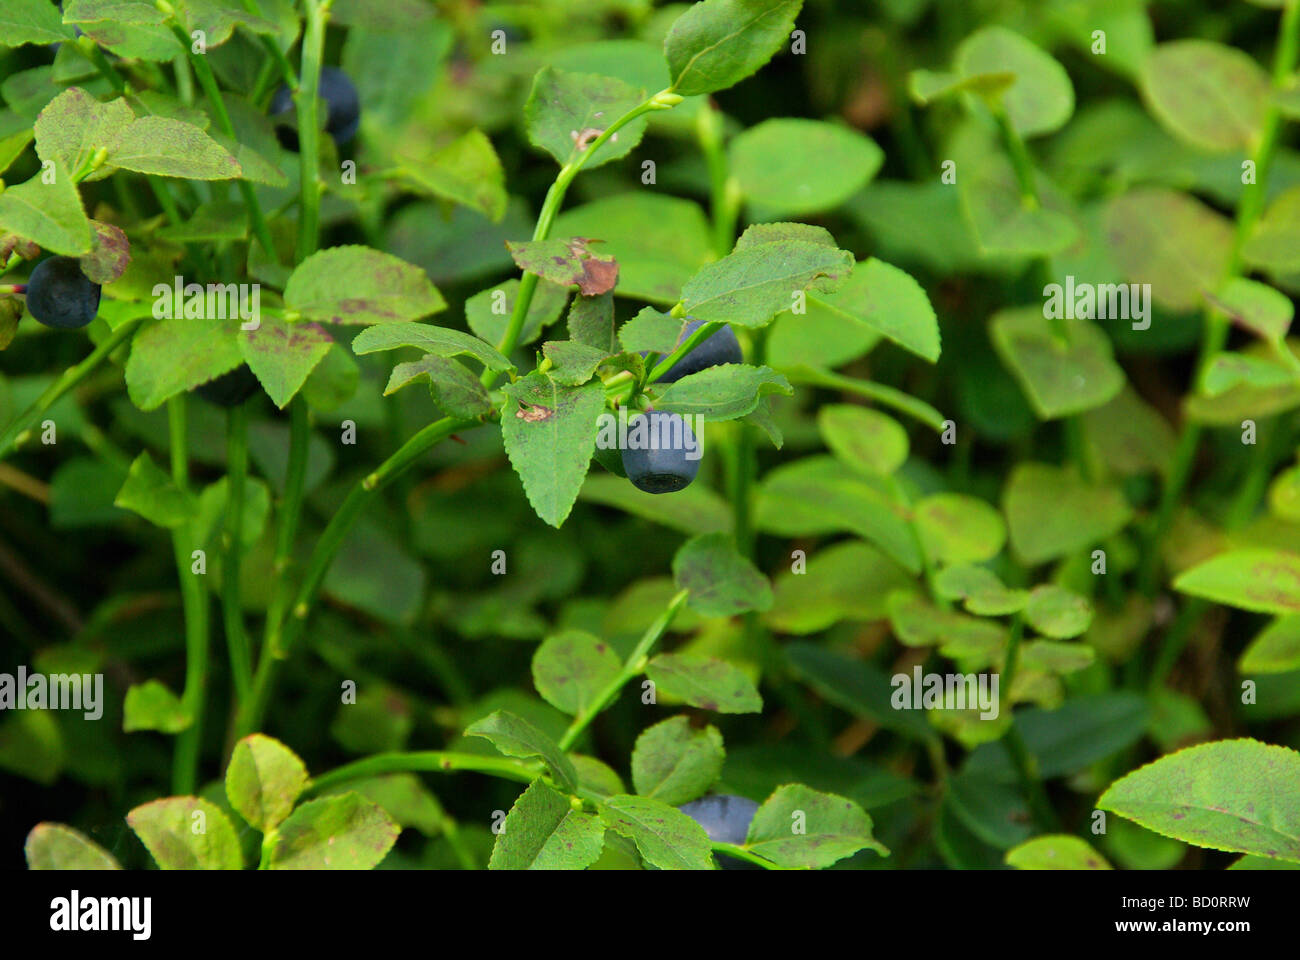 Blaubeere Pflanze blueberry plant 05 Stock Photo